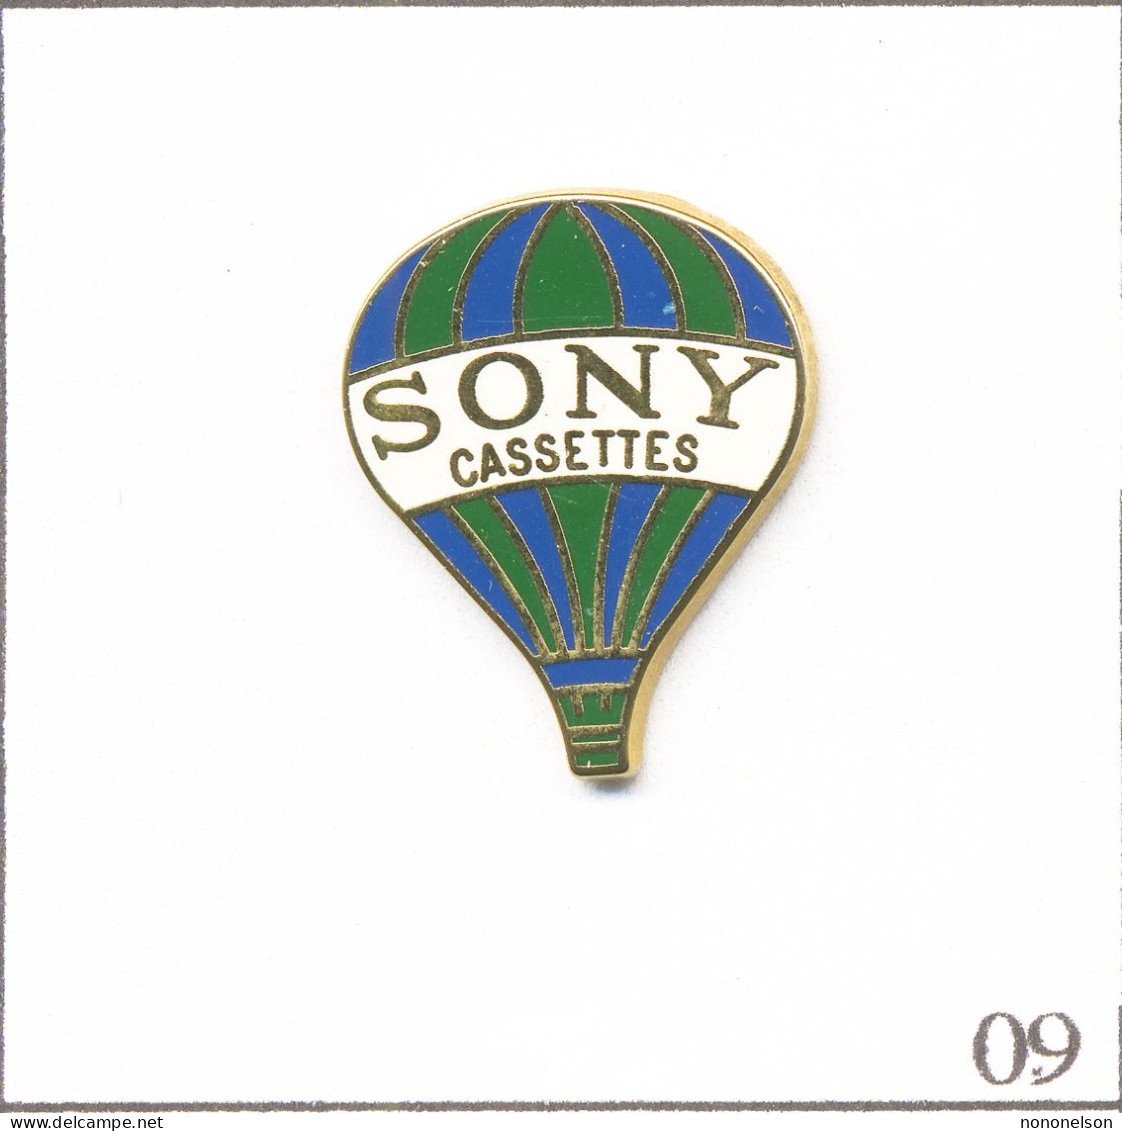 Pin's Transport - Montgolfière / Ballon “Sony“ - Rayures Vertes Et Bleues. Est. Sony 1989. Zamac. T953-09 - Montgolfières